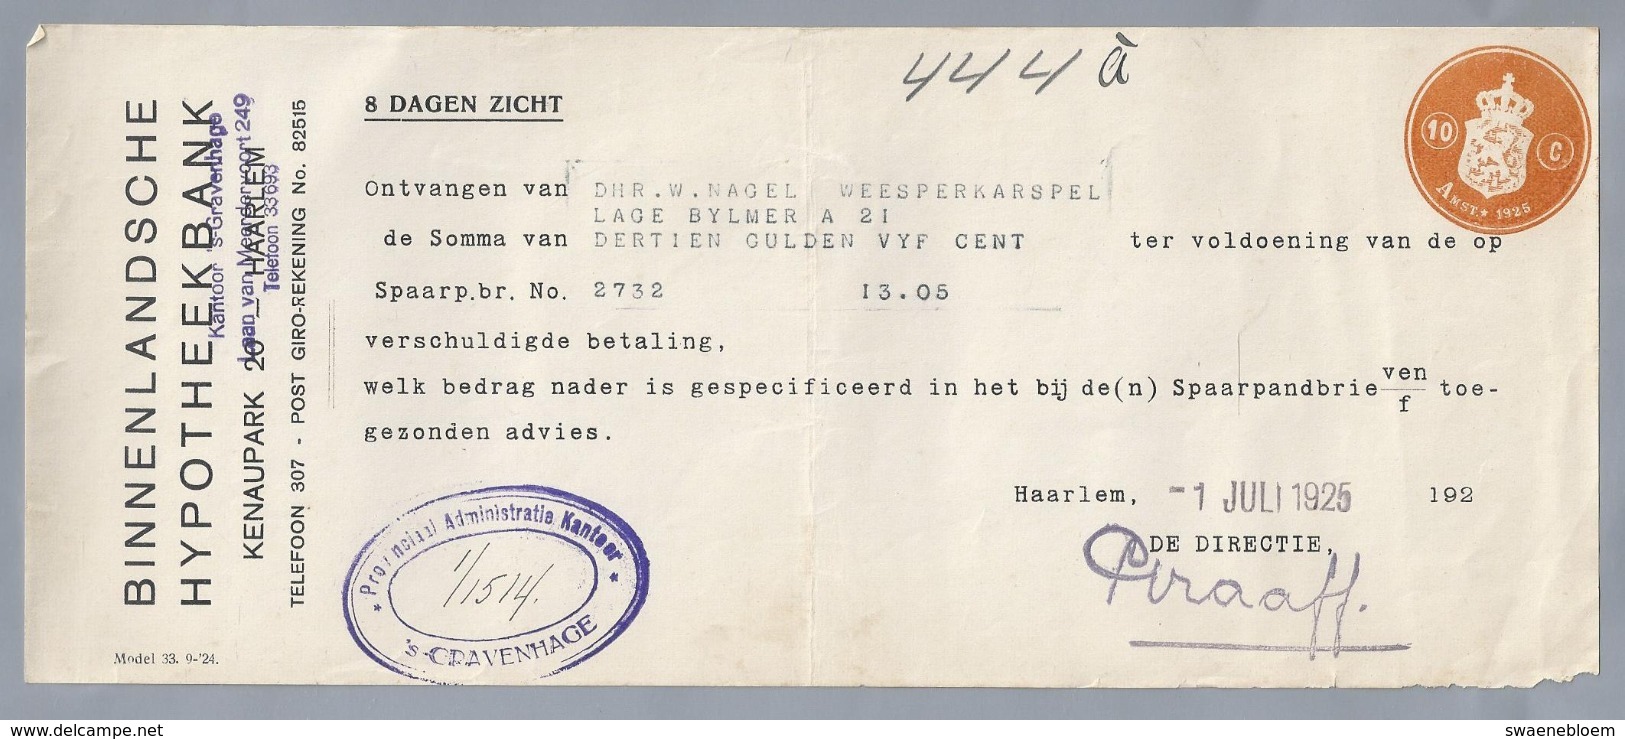 NL.- Betaal Bewijs Van De BINNENLANDSCHE HYPOTHEEKBANK. KENAUPARK 20 HAARLEM. 1 JULI 1925. - Pays-Bas